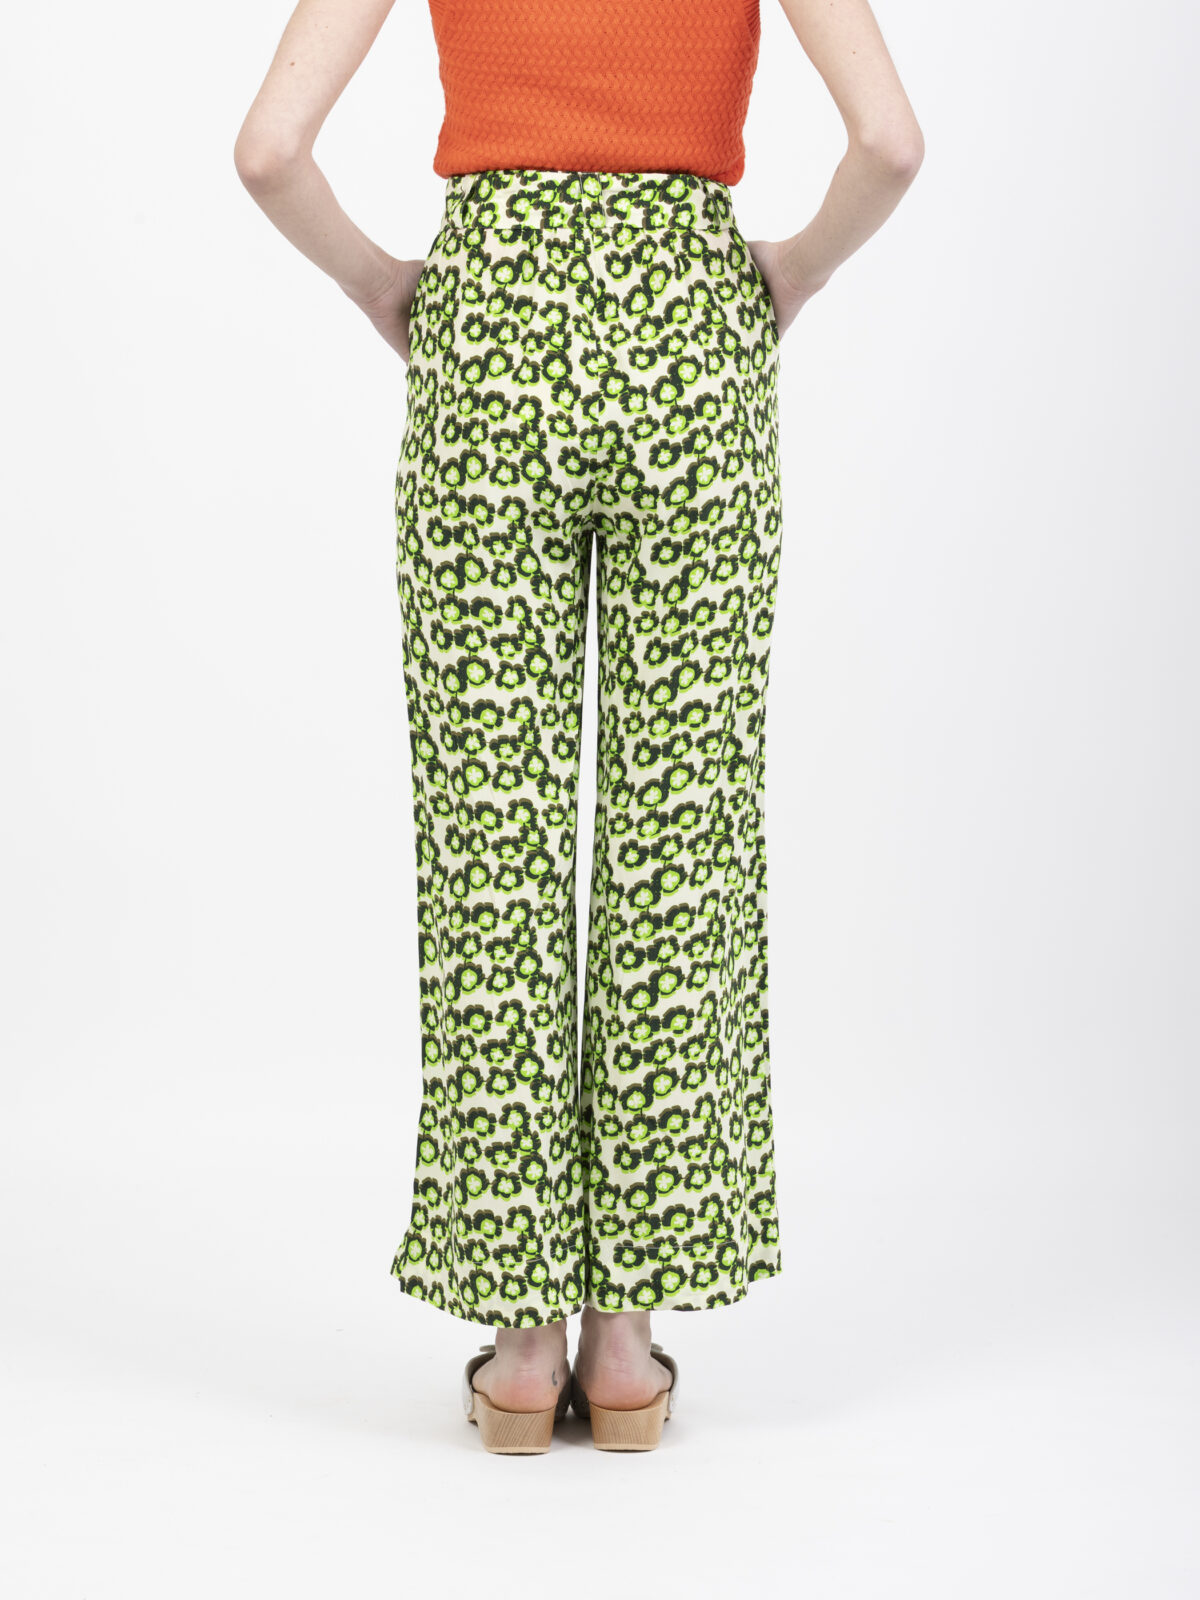 jim-green-floral-trousers-suncoo-matchbox-athens-shop-online-boutique